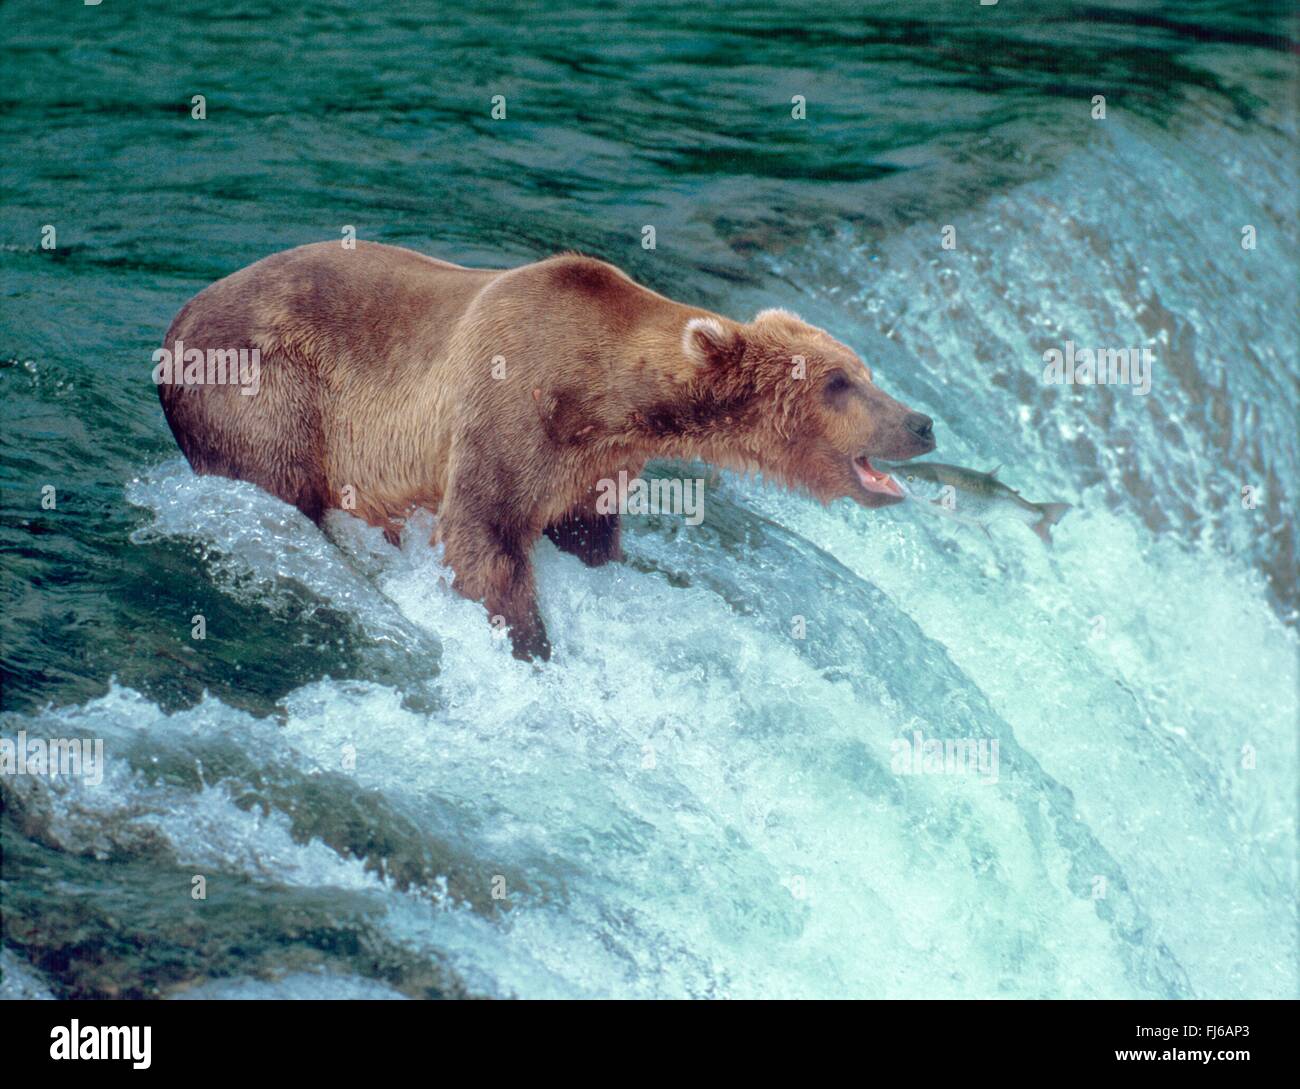 kodiak bear (Ursus arctos middendorfi, Ursus arctos middendorffi), bear fishing a salmon at the waterfall, fish jumping into the mouth, USA, Alaska Stock Photo